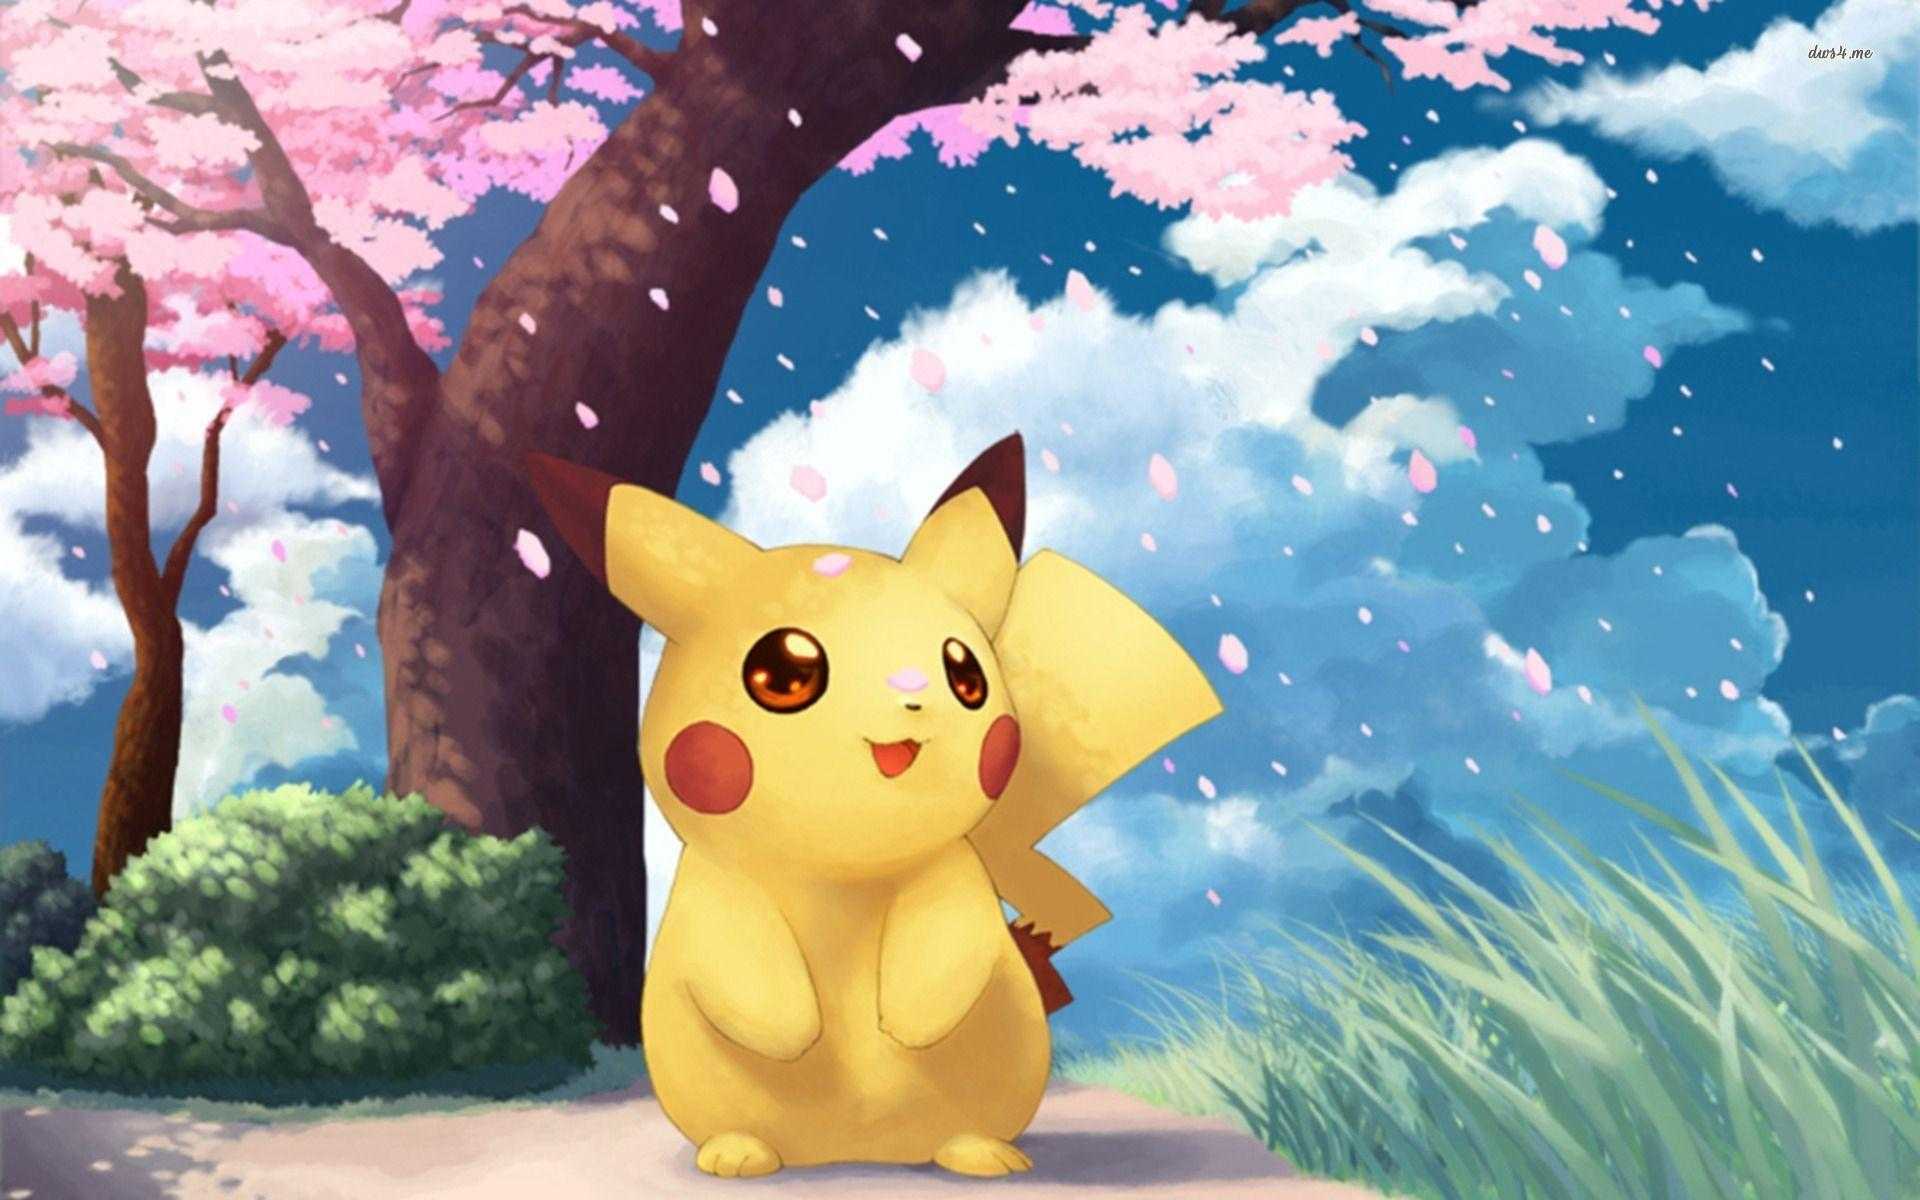 Cute Pokemon Wallpapers - Top Những Hình Ảnh Đẹp